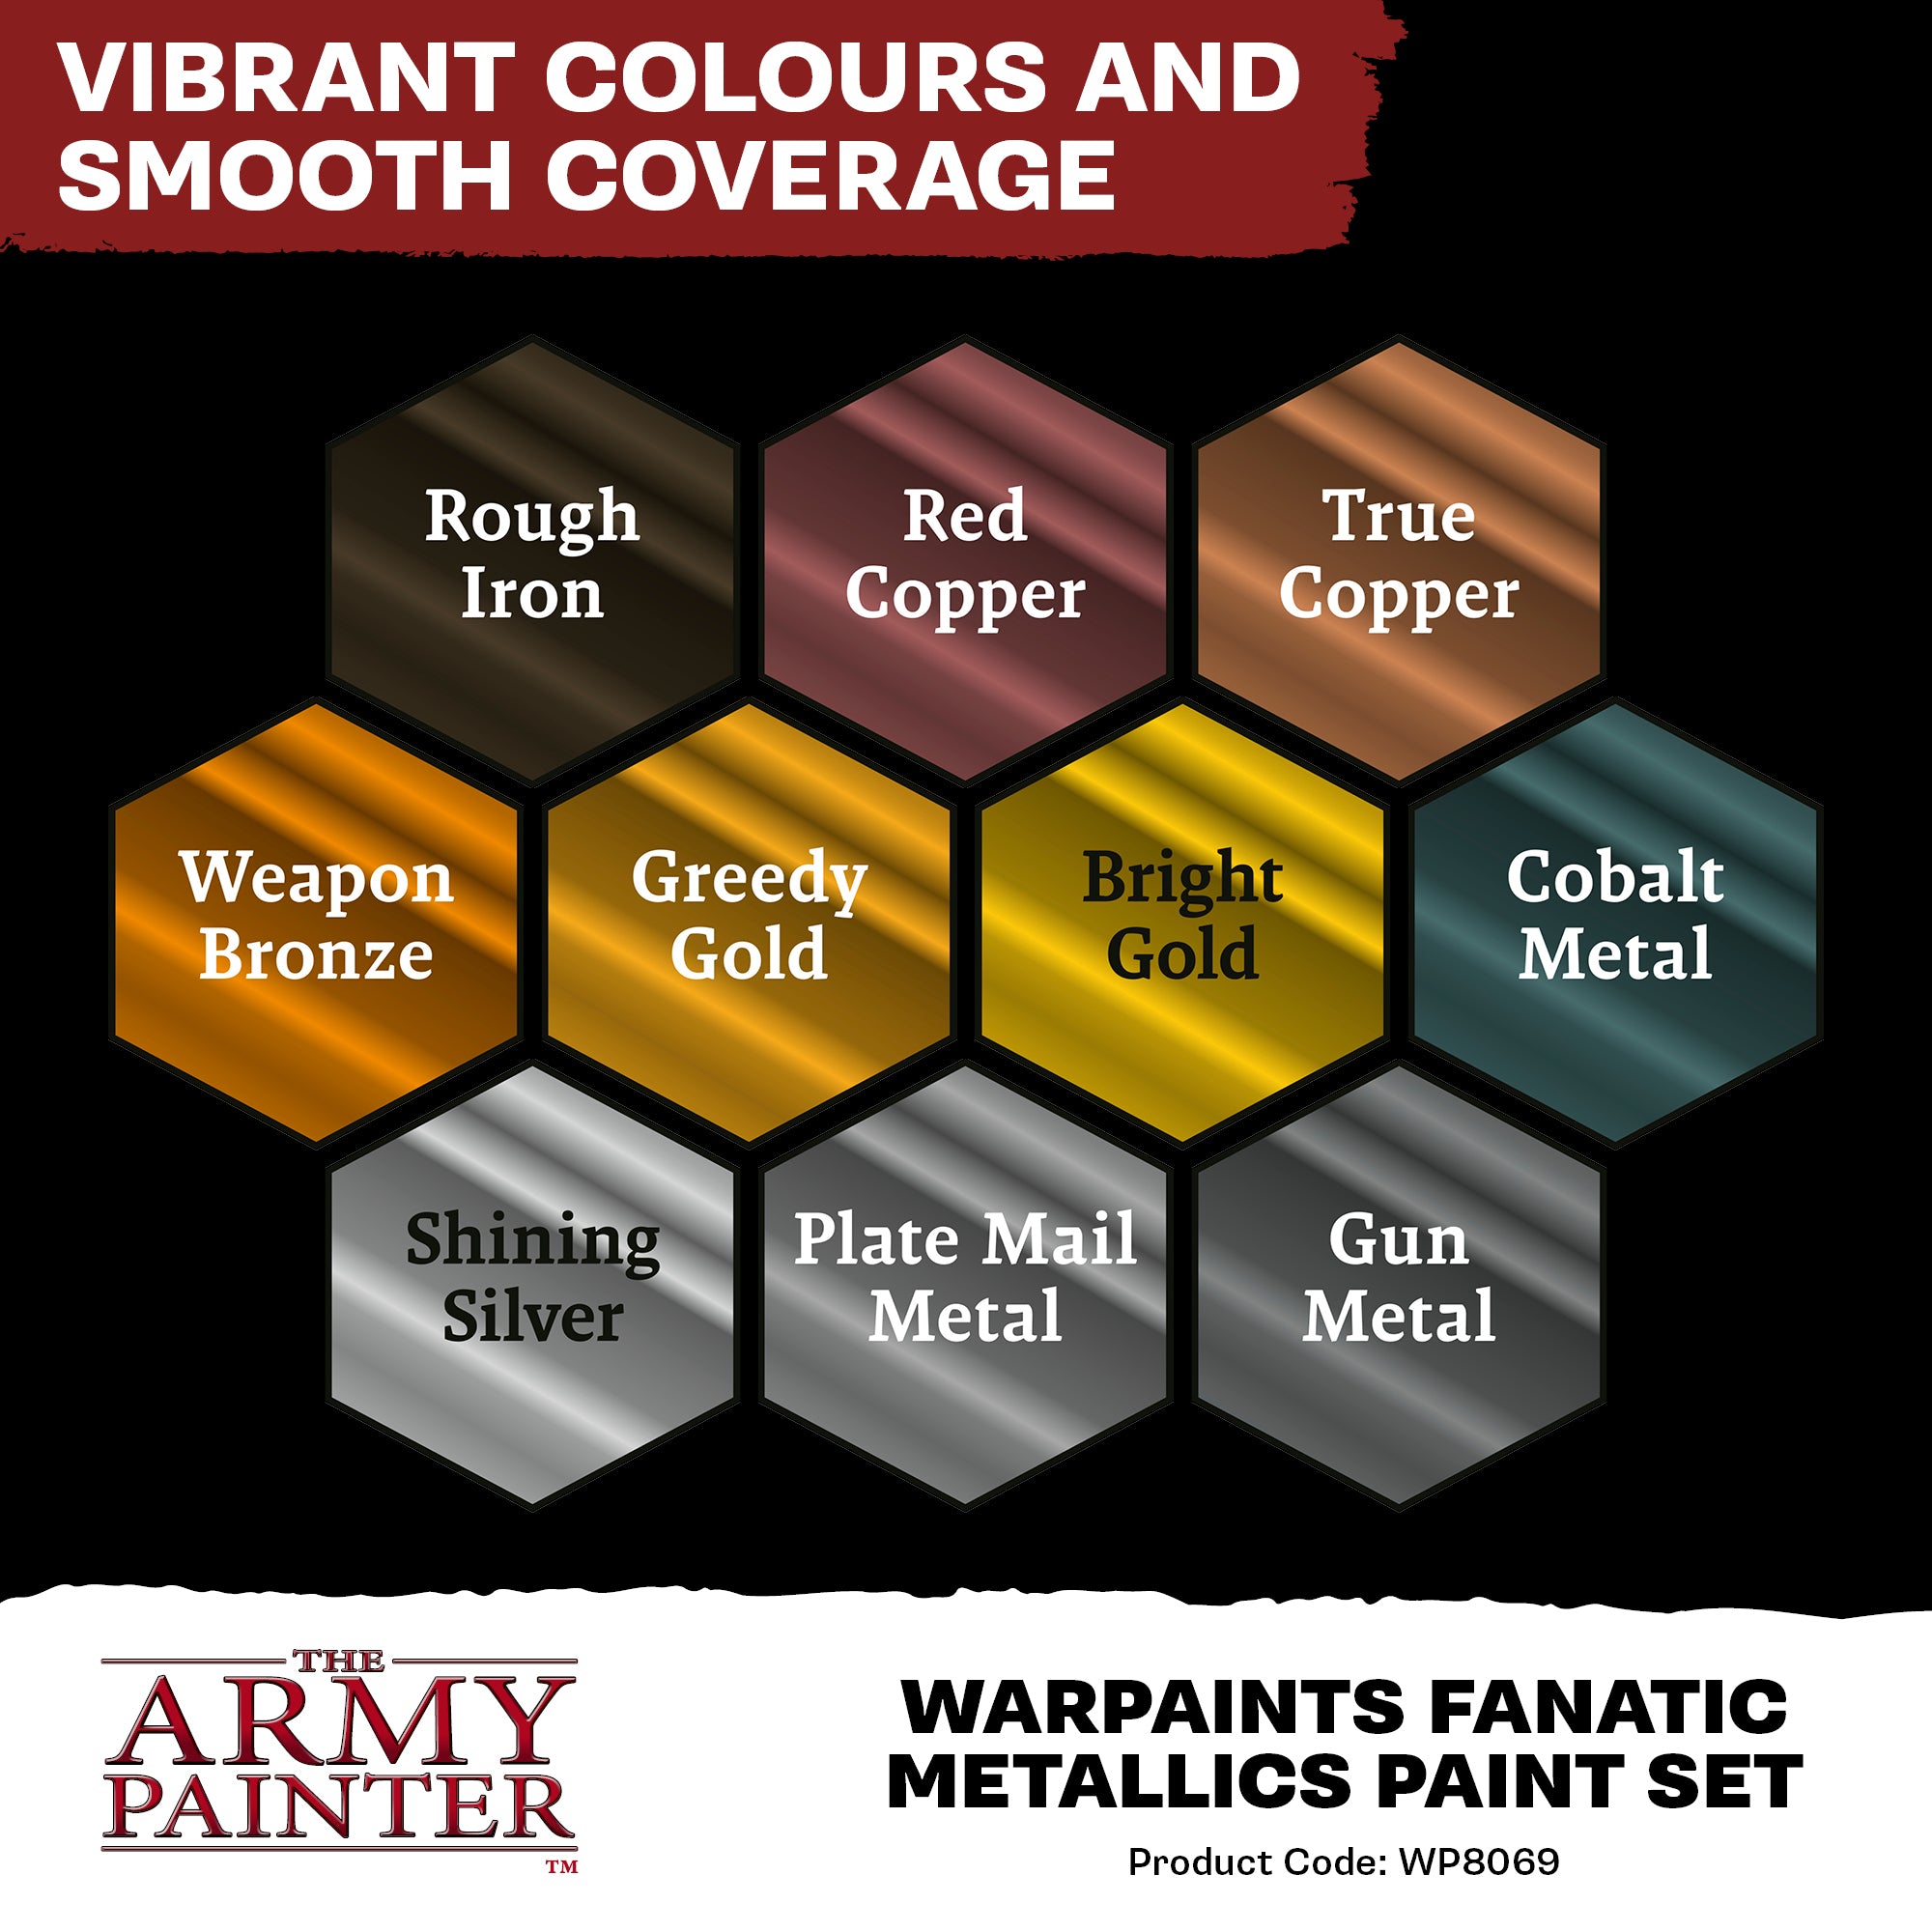 Army Painter Warpaints Fanatic Mega Paint Set